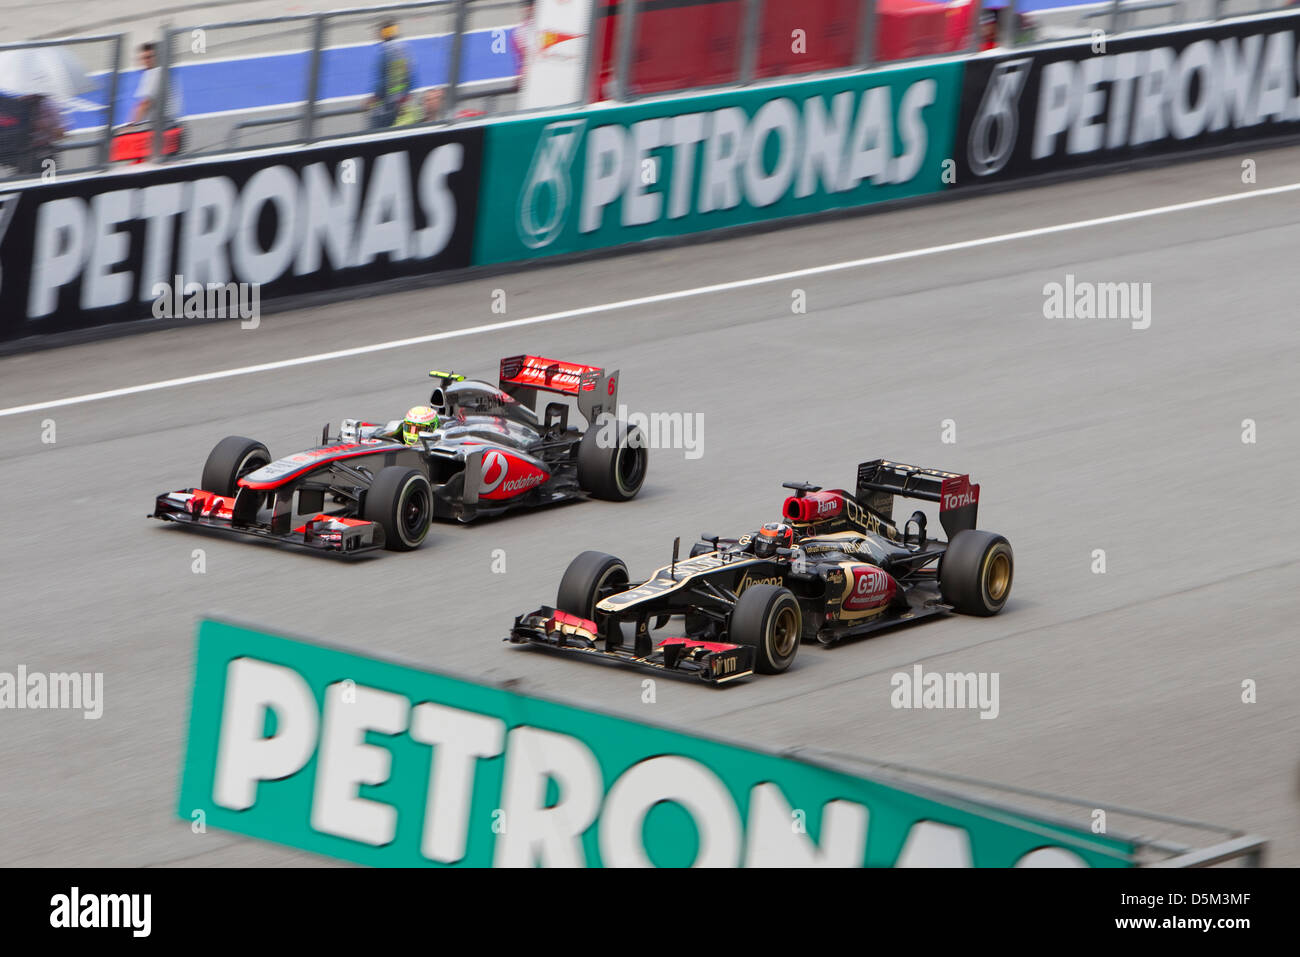 Kimi Raikkonen of Lotus F1 Team overtakes McLaren at the Malaysian F1 GP Stock Photo